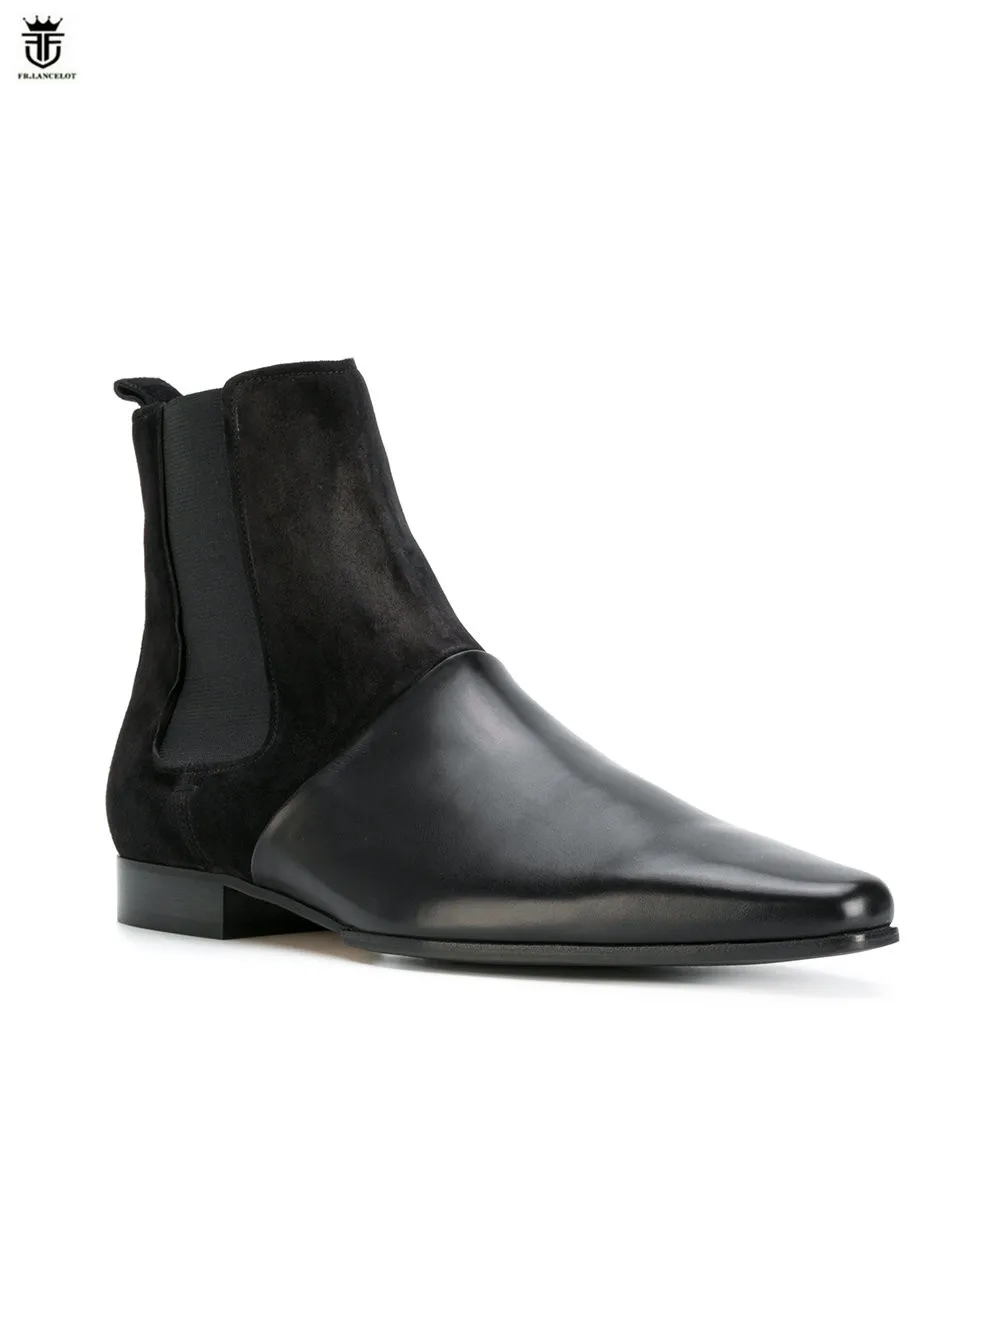 FR.LANCELOT 2020 nuevo color mezclado botas de los hombres de cuero genuino botas planas del talón de retazos de cuero botines de deslizamiento en los hombres de fiesta zapatos 2